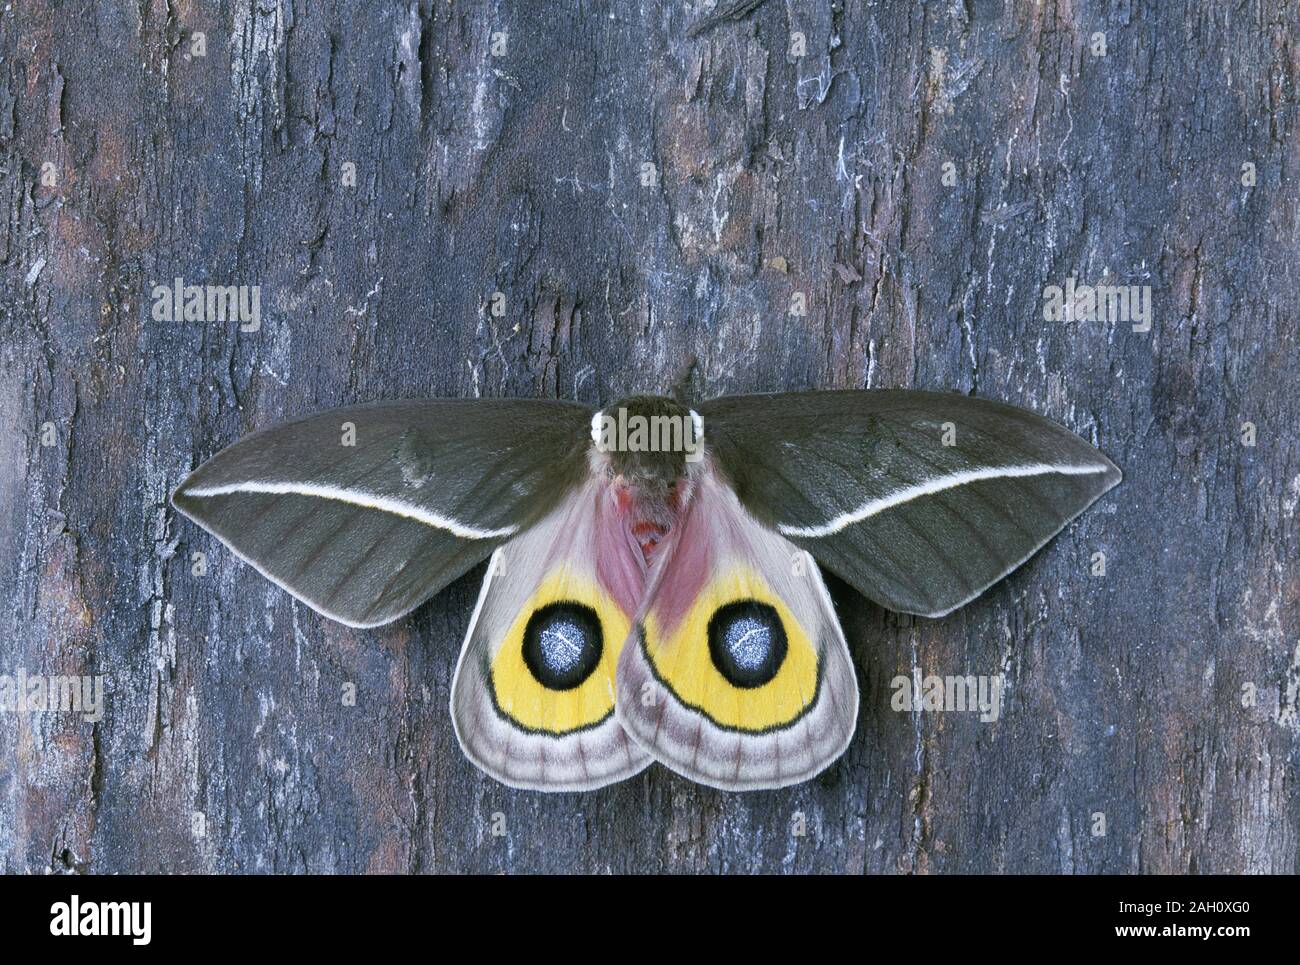 Zephyr Eyed Silkmoth (Automeris zephryia) Flügel öffnen in schockreaktionen anzeigen. Cibola National Forest, Arizona, Sommer. Stockfoto